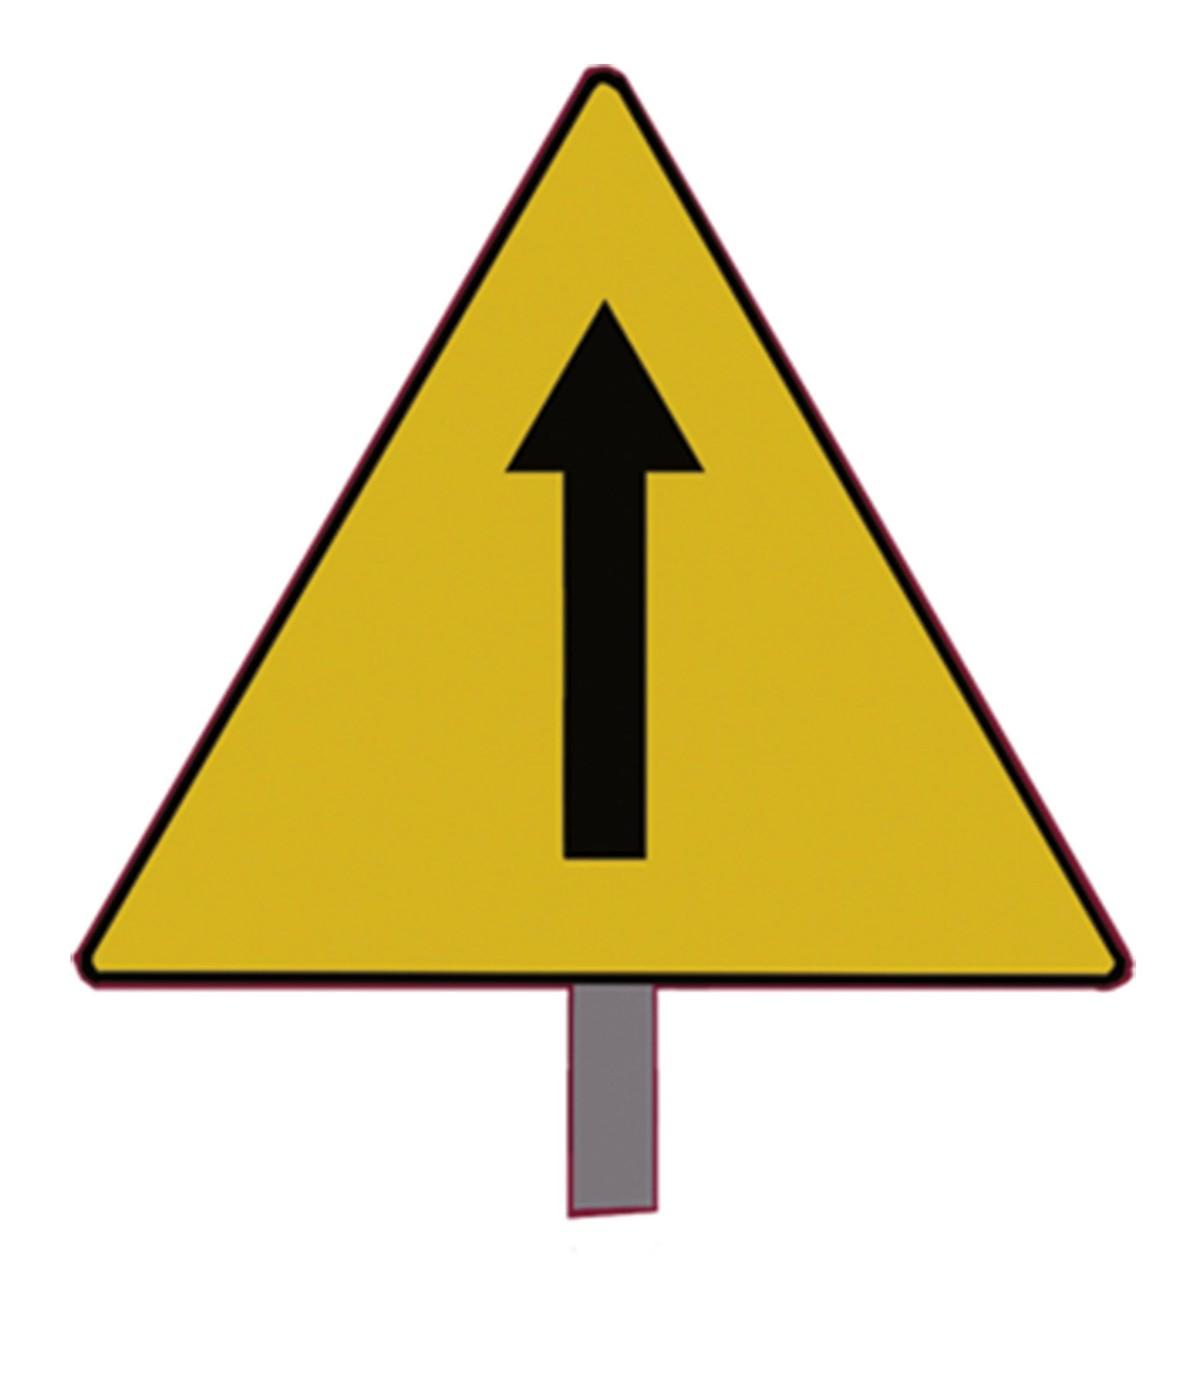 panneau de signalisation avec une flèche